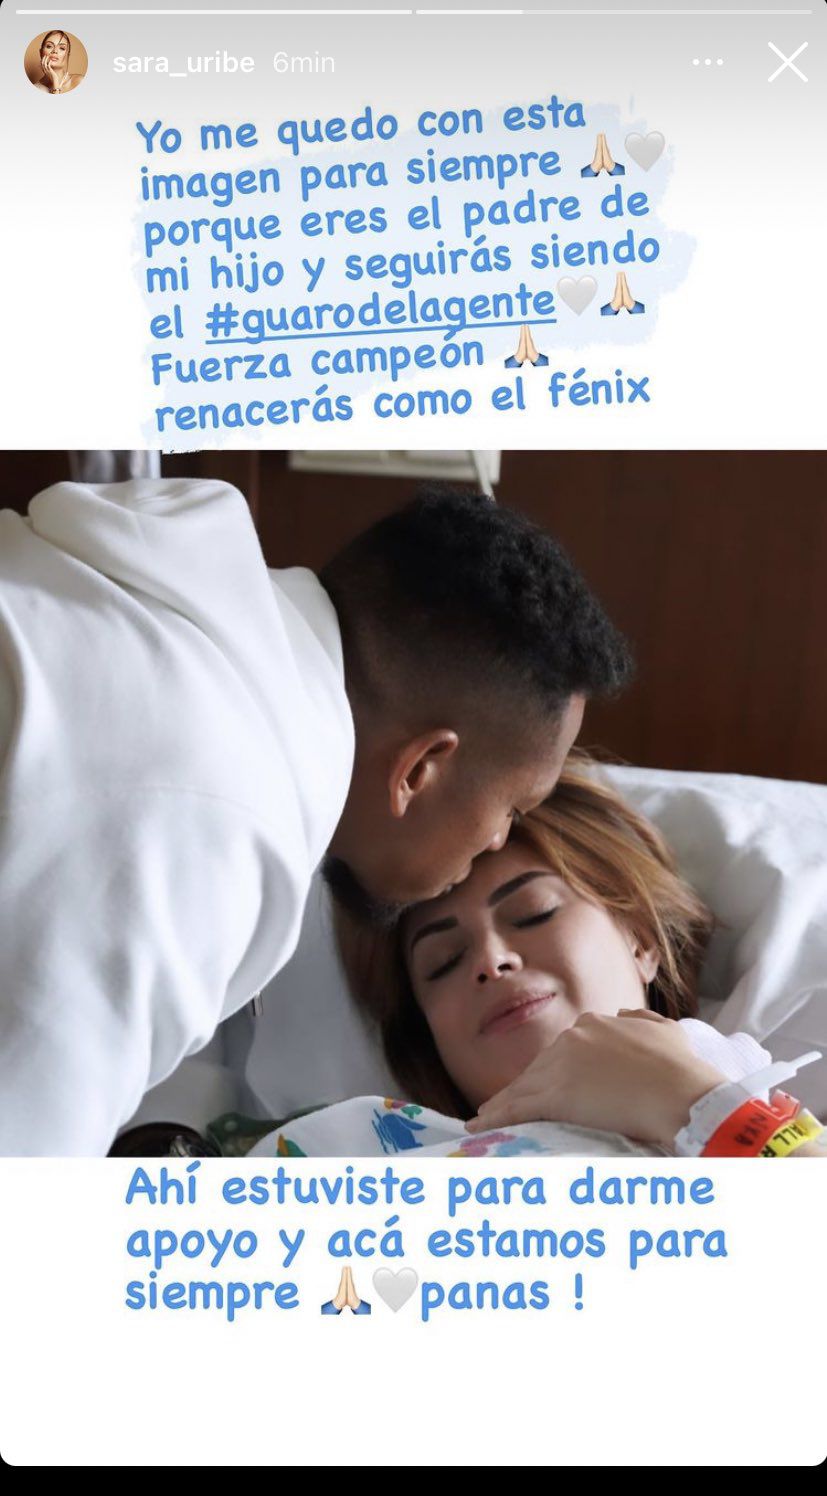 La modelo Sara Uribe, ex pareja de Fredy Guarín,  mostró su apoyo al futbolista en su cuenta oficial de Facebook.